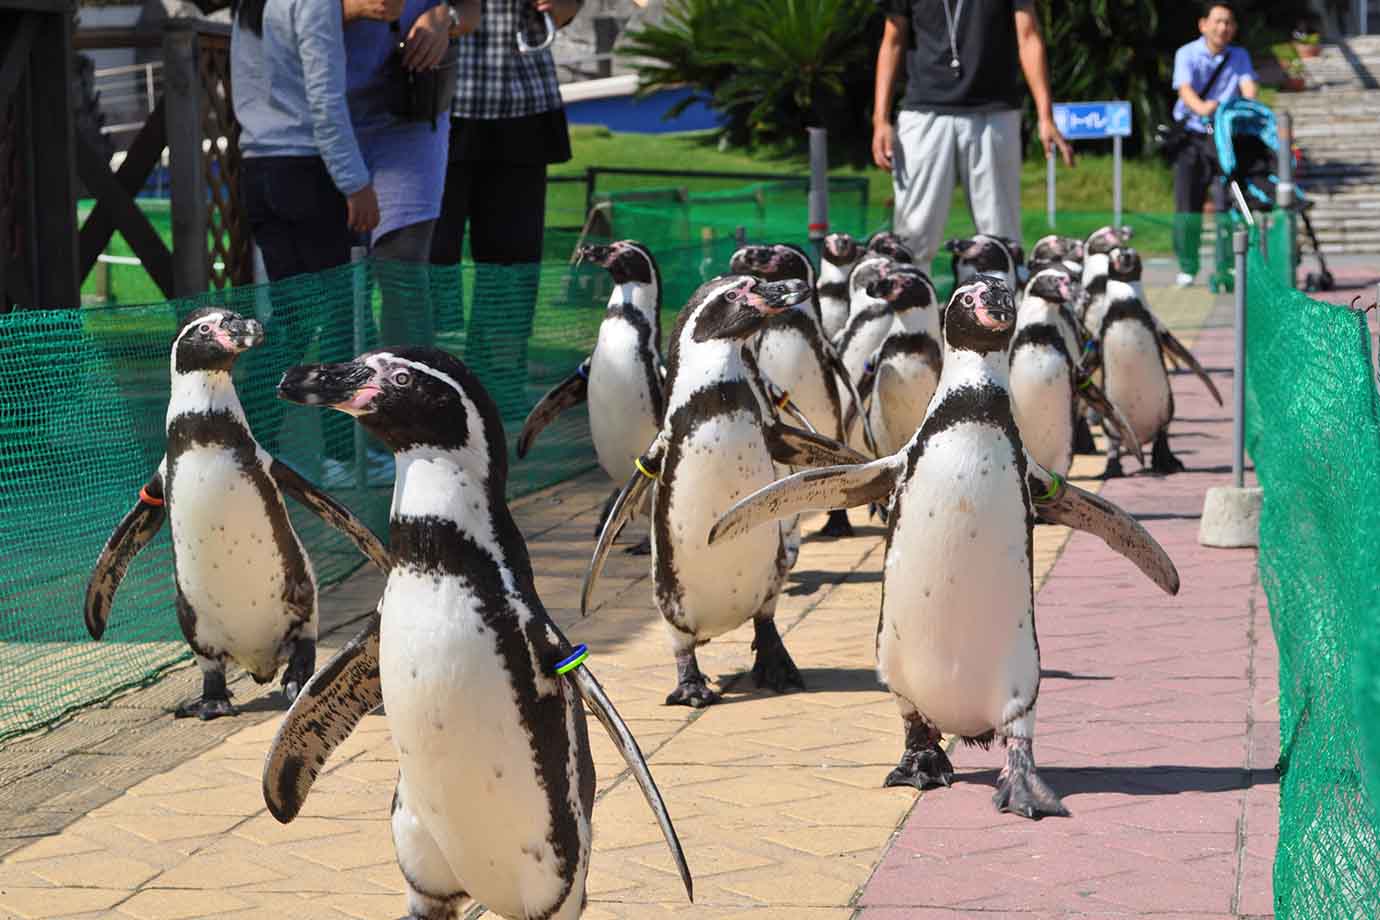 「ふれあいカーニバル」では、アシカやアザラシ、イルカに無料で触ることができ、ペンギンには餌やりができます。